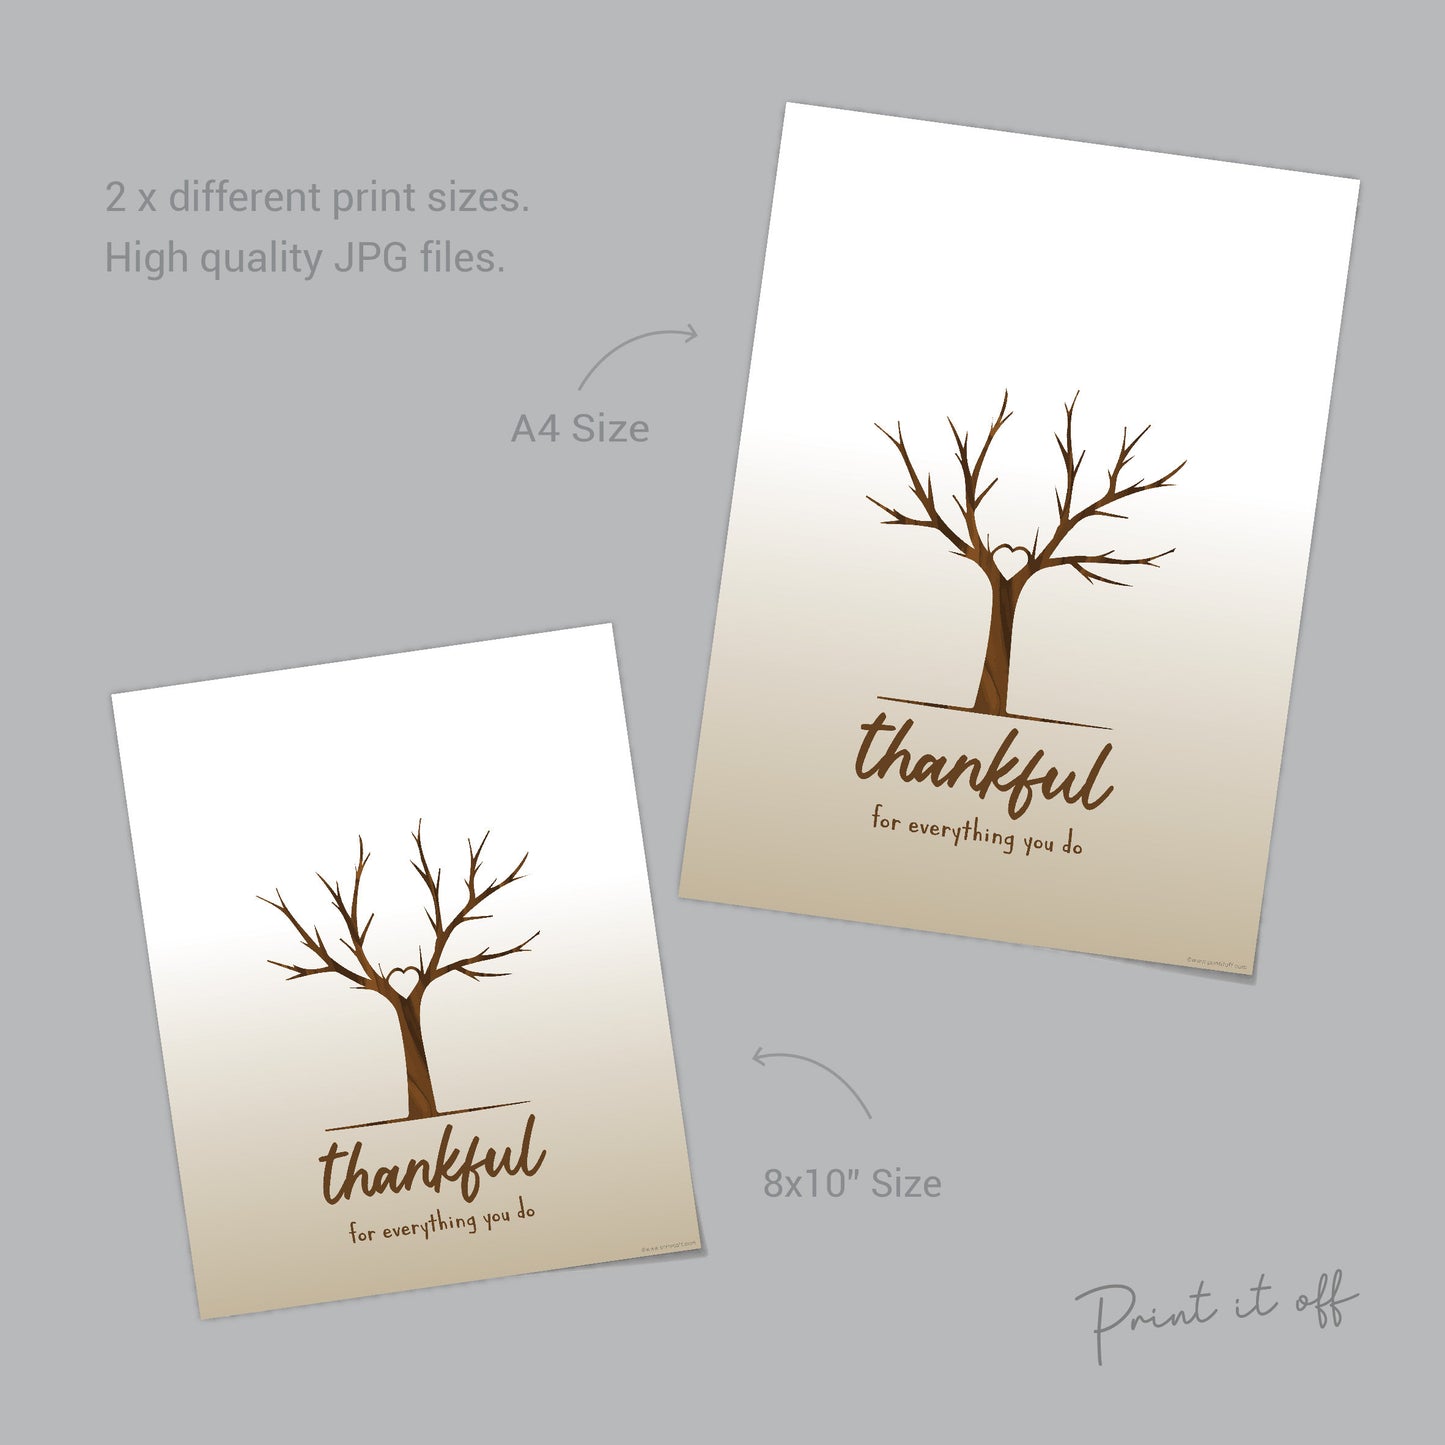 Thankful for Everything You Do Tree / Handprint Art Craft Print / Kids Baby Toddler Keepsake / Printable DIY Card Gift Memory Keepsake 0074